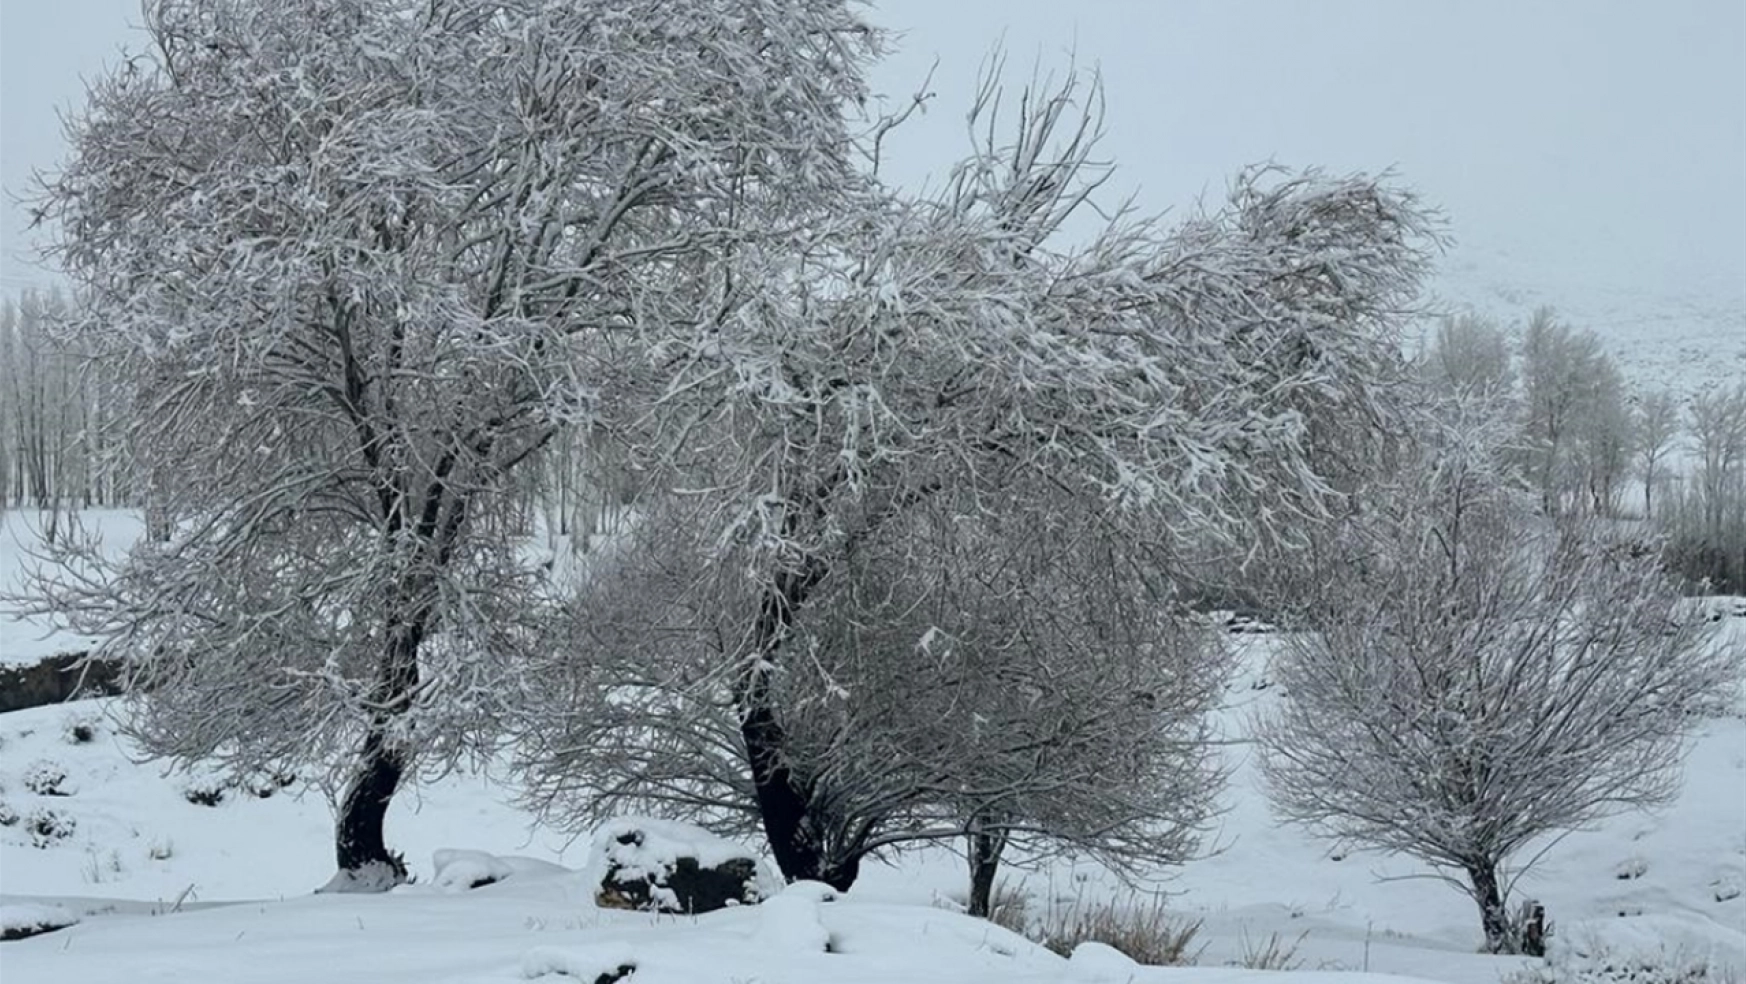 Van, Muş ve Hakkari'de kar nedeniyle 72 yerleşim birimine ulaşım sağlanamıyor